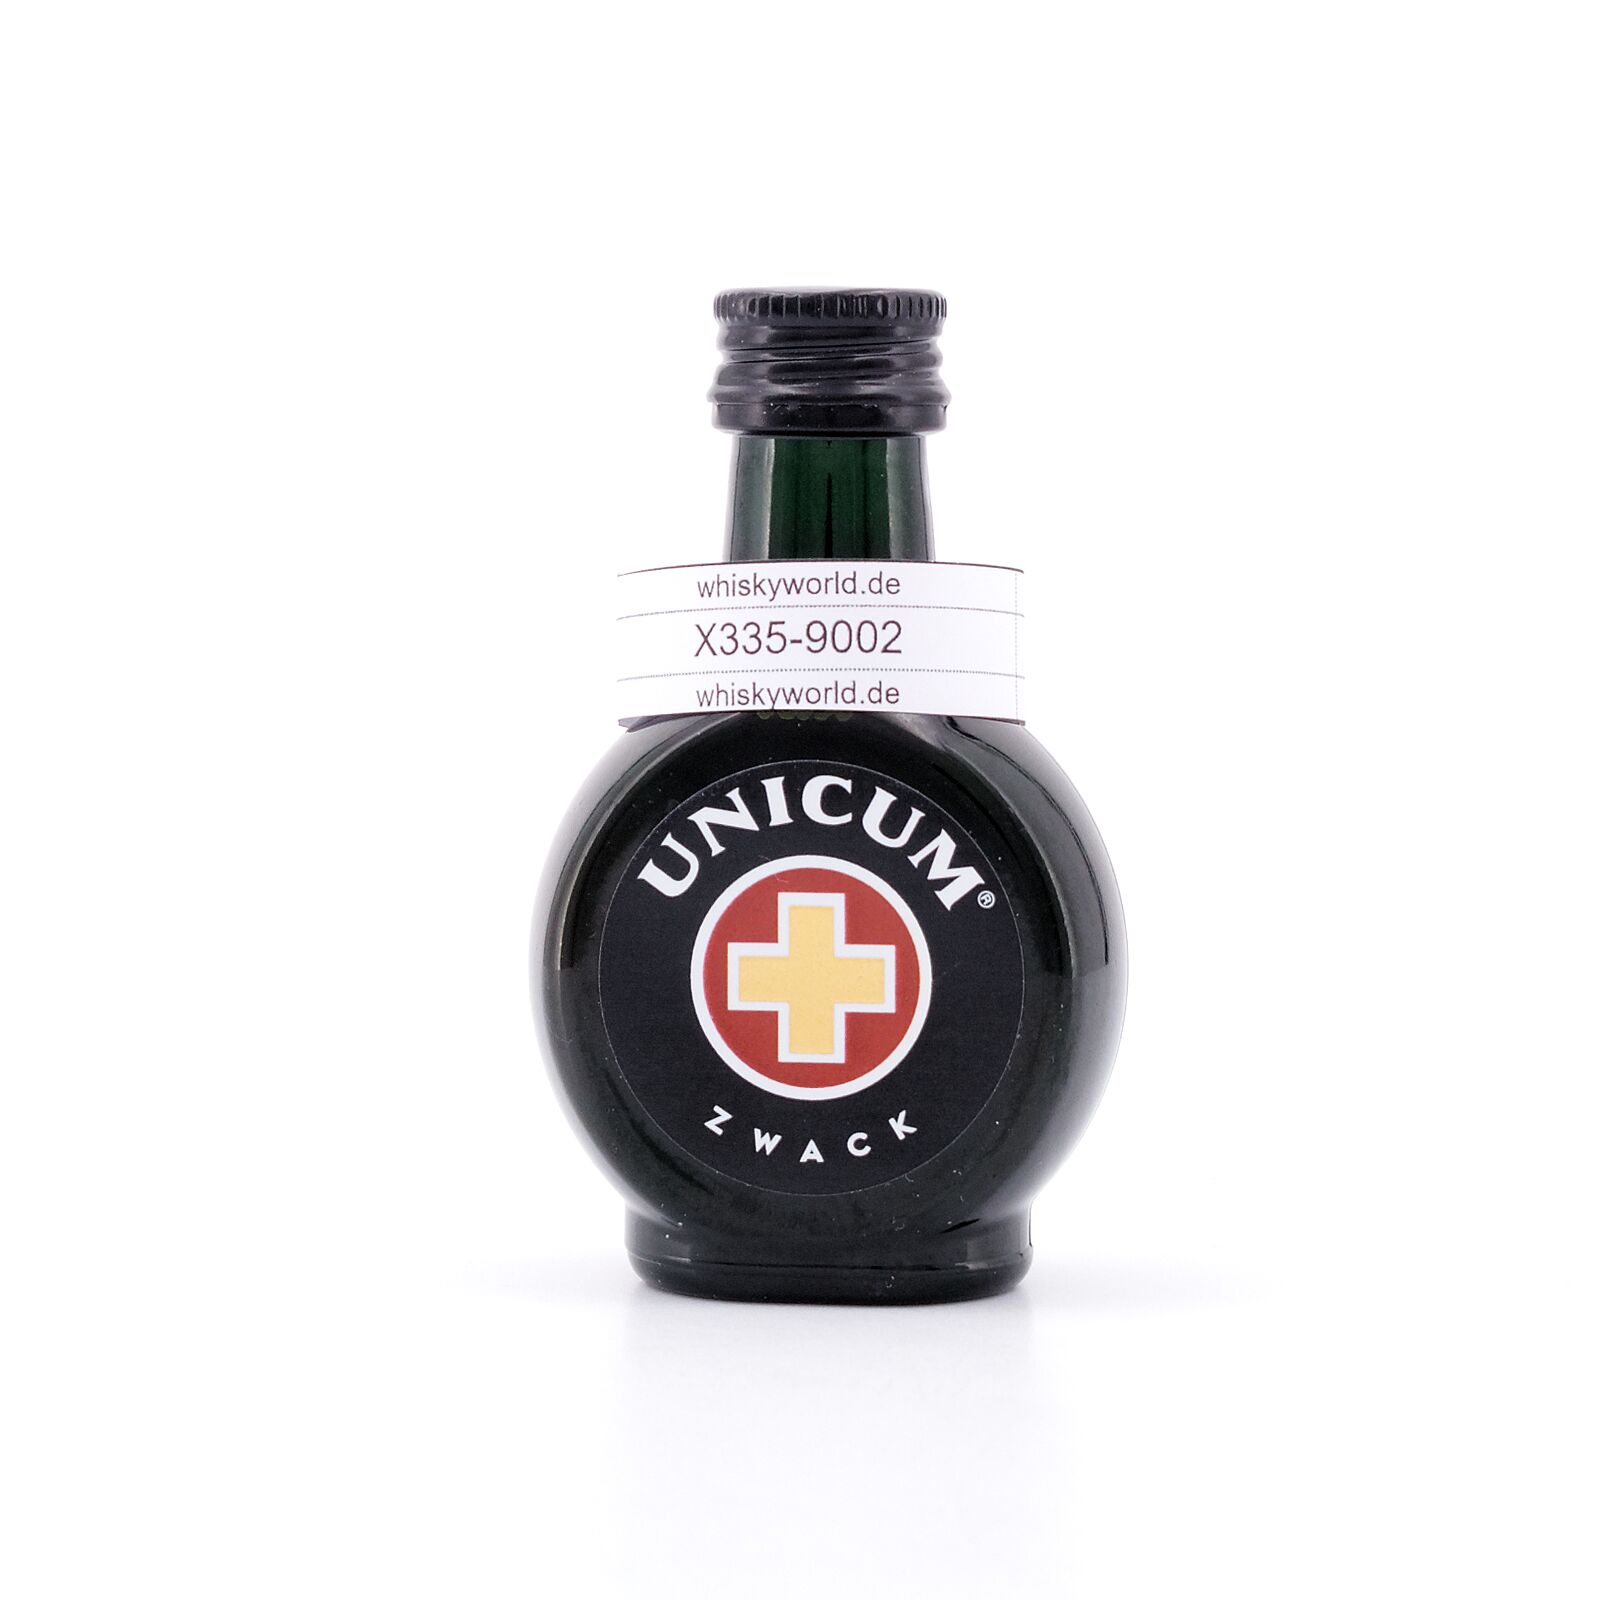 Zwack Unicum Miniatur Kräuterlikör 0,040 Liter/ 40.0% vol | Likör